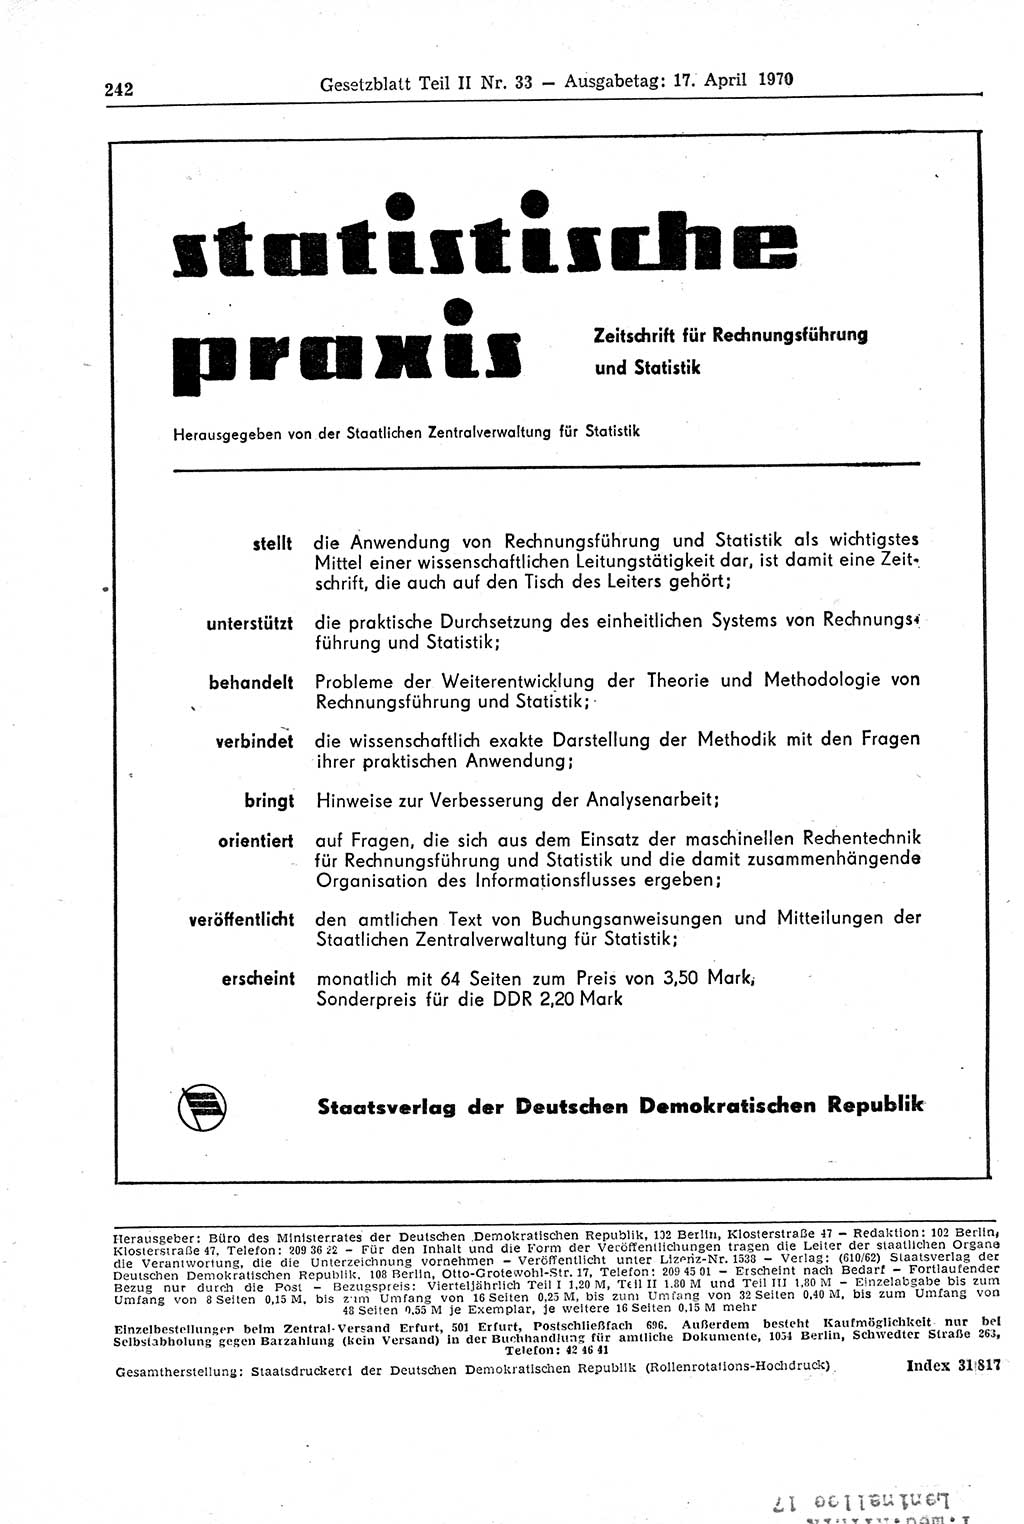 Gesetzblatt (GBl.) der Deutschen Demokratischen Republik (DDR) Teil ⅠⅠ 1970, Seite 242 (GBl. DDR ⅠⅠ 1970, S. 242)